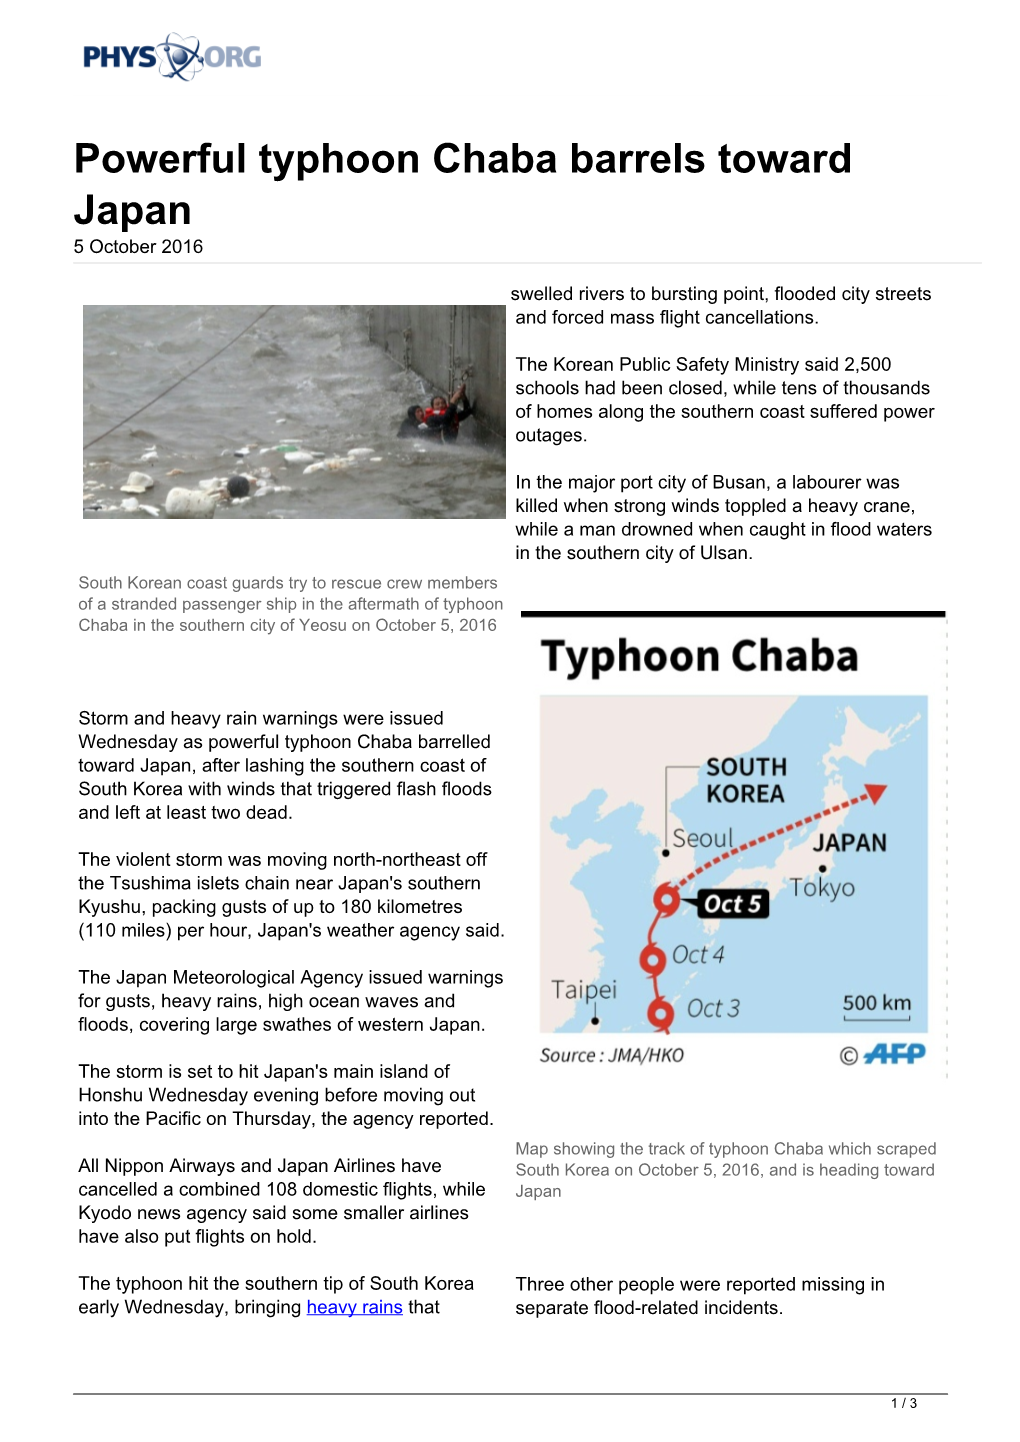 Powerful Typhoon Chaba Barrels Toward Japan 5 October 2016